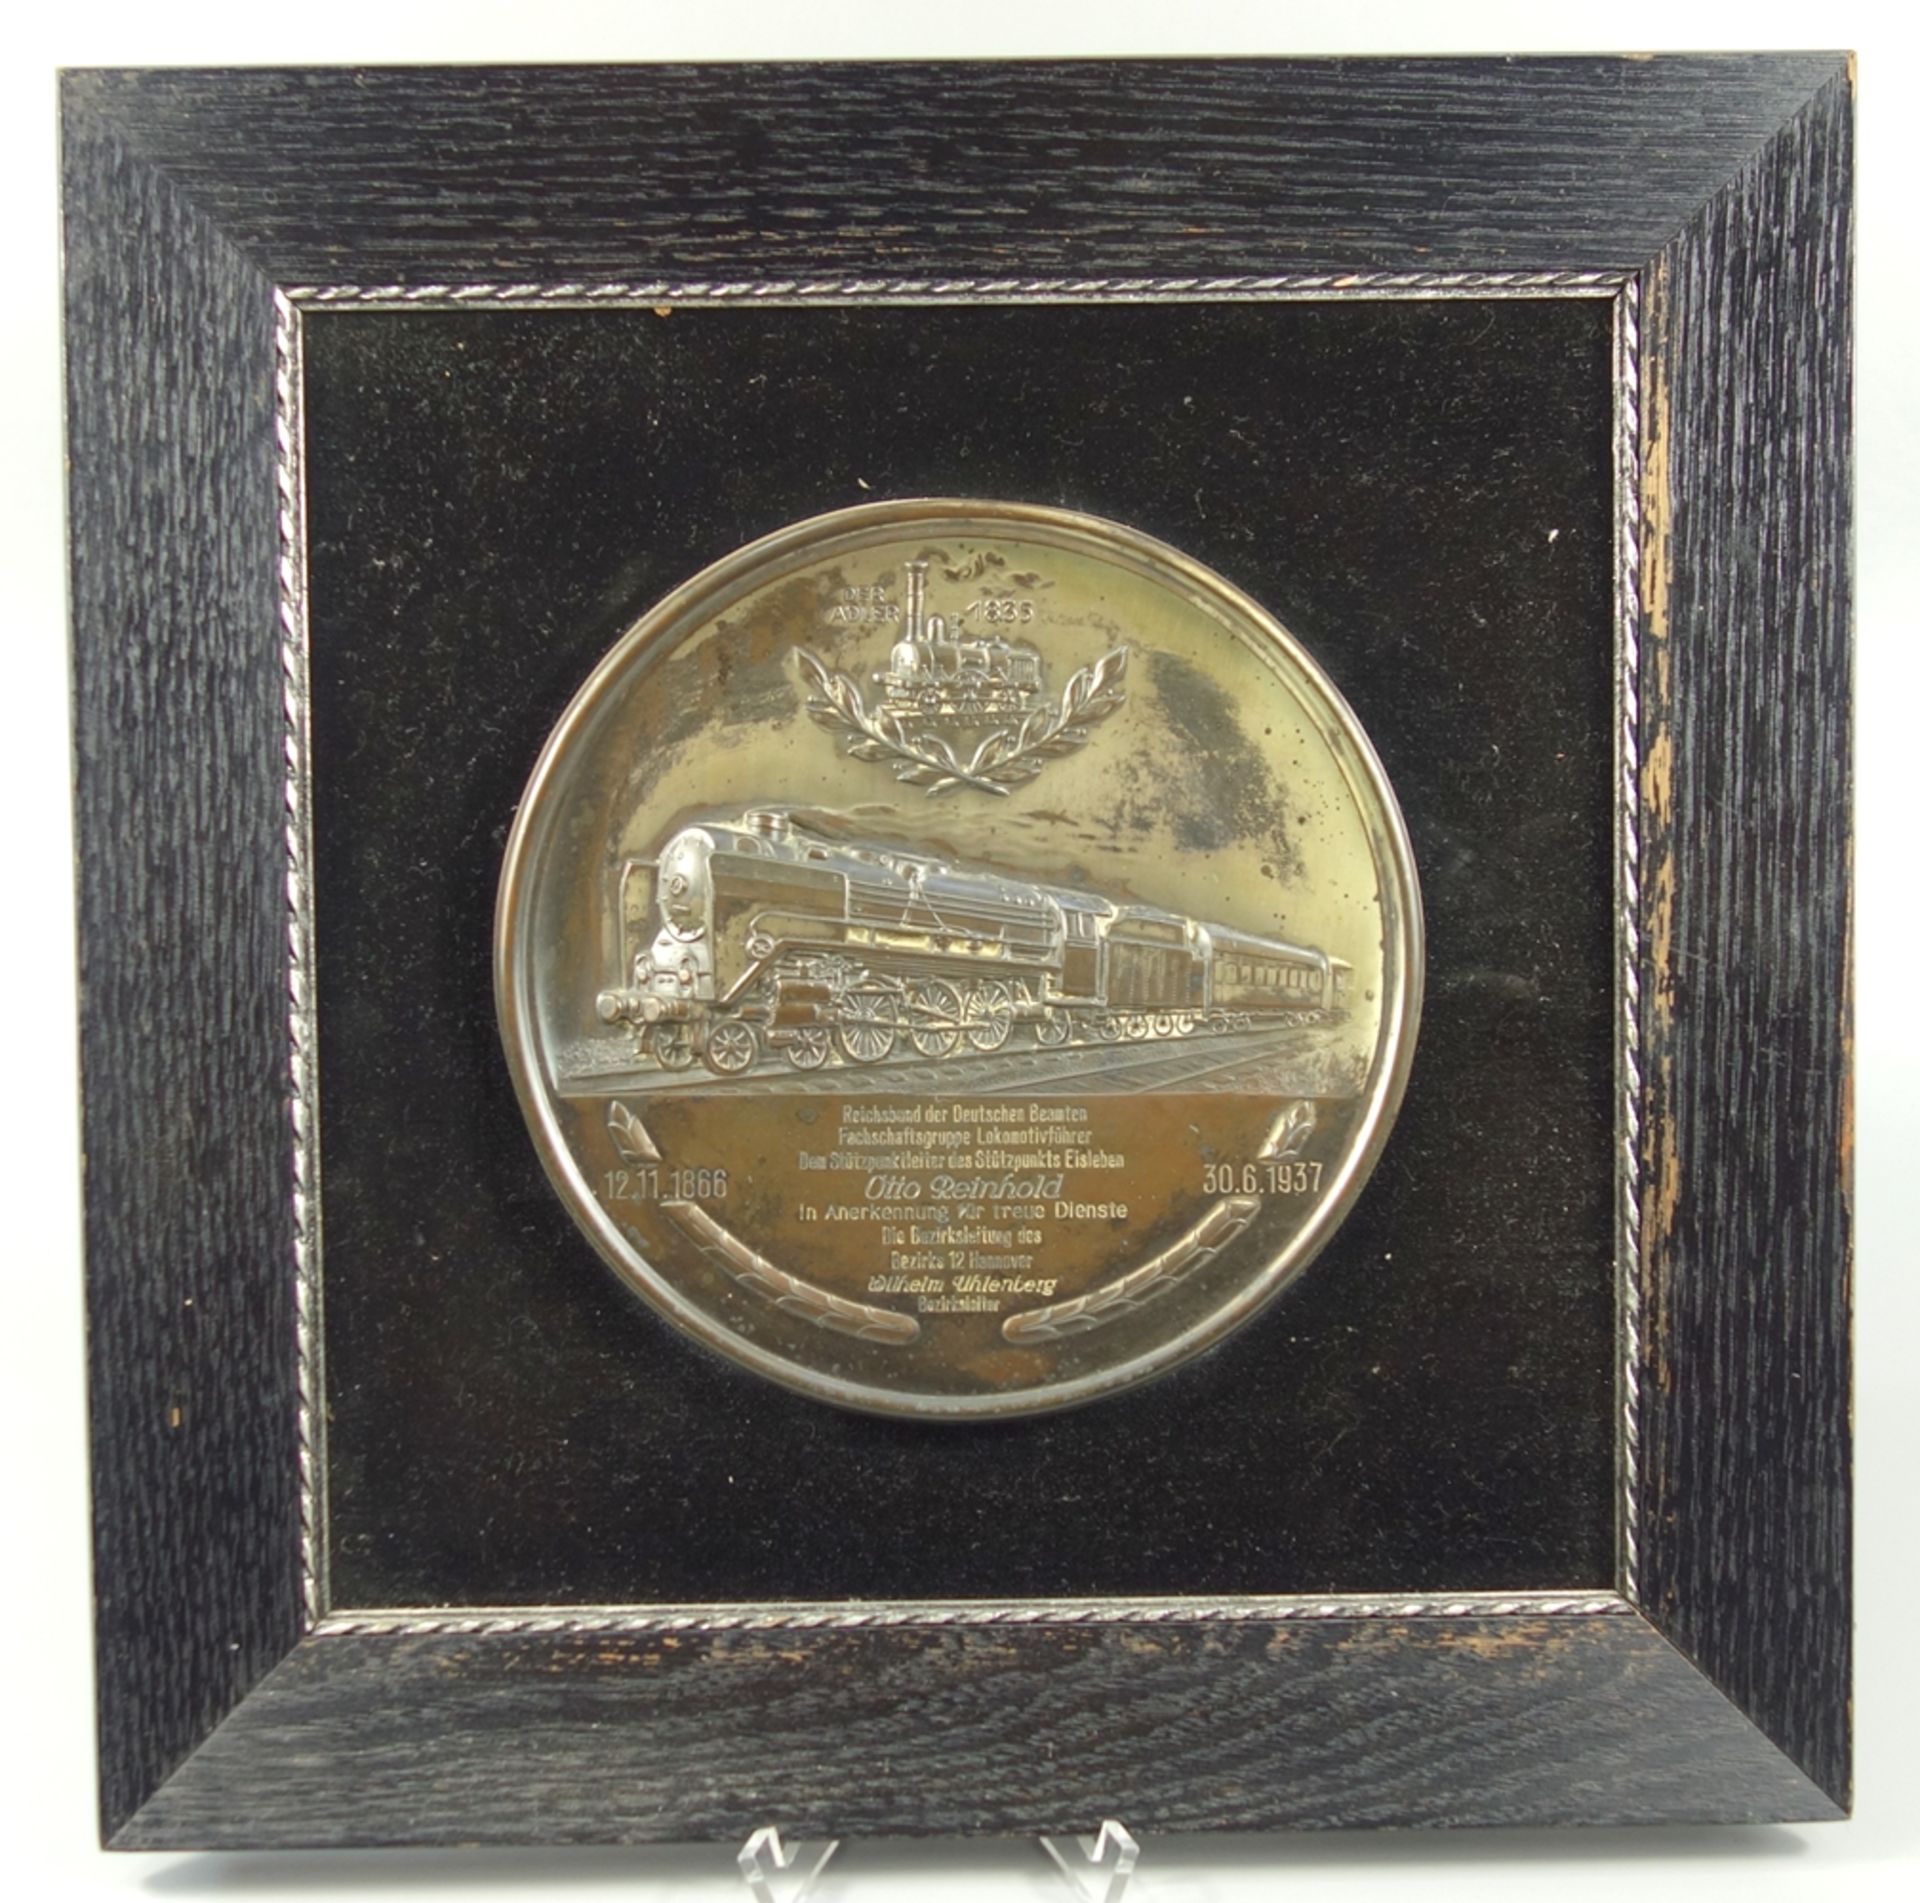 Reliefplatte zur Anerkennung treuer Dienste, überreicht vom Reichbund der Deutschen Beamten, - Bild 2 aus 2